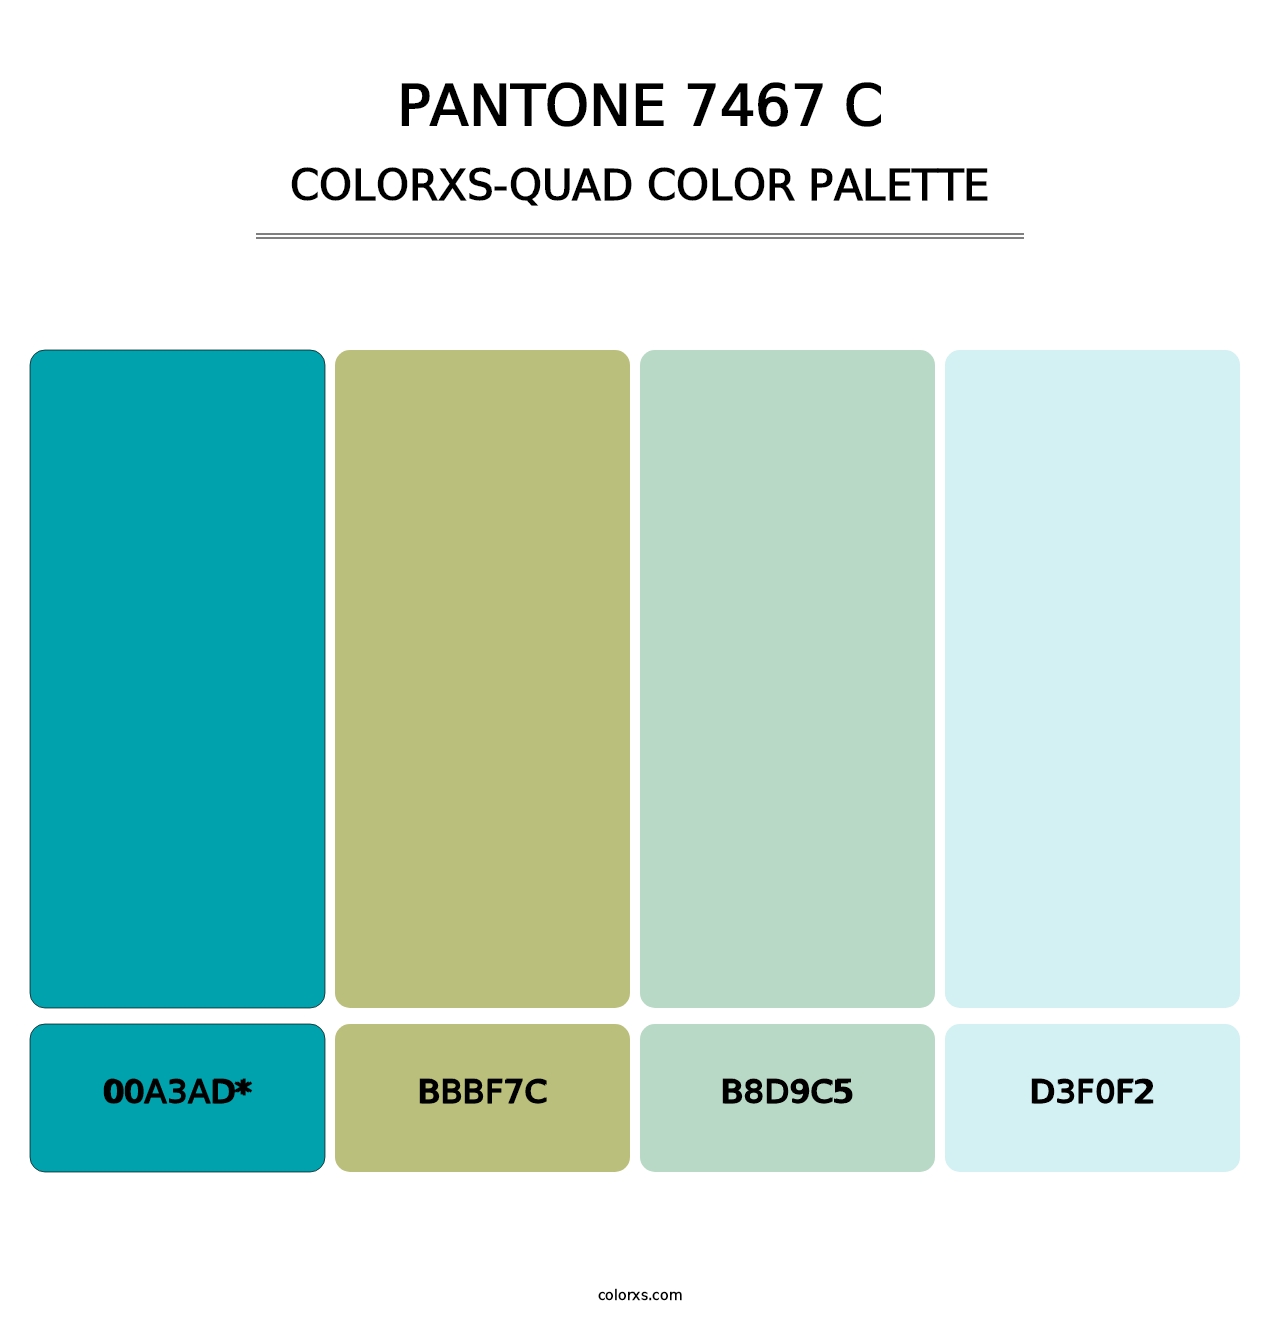 PANTONE 7467 C - Colorxs Quad Palette